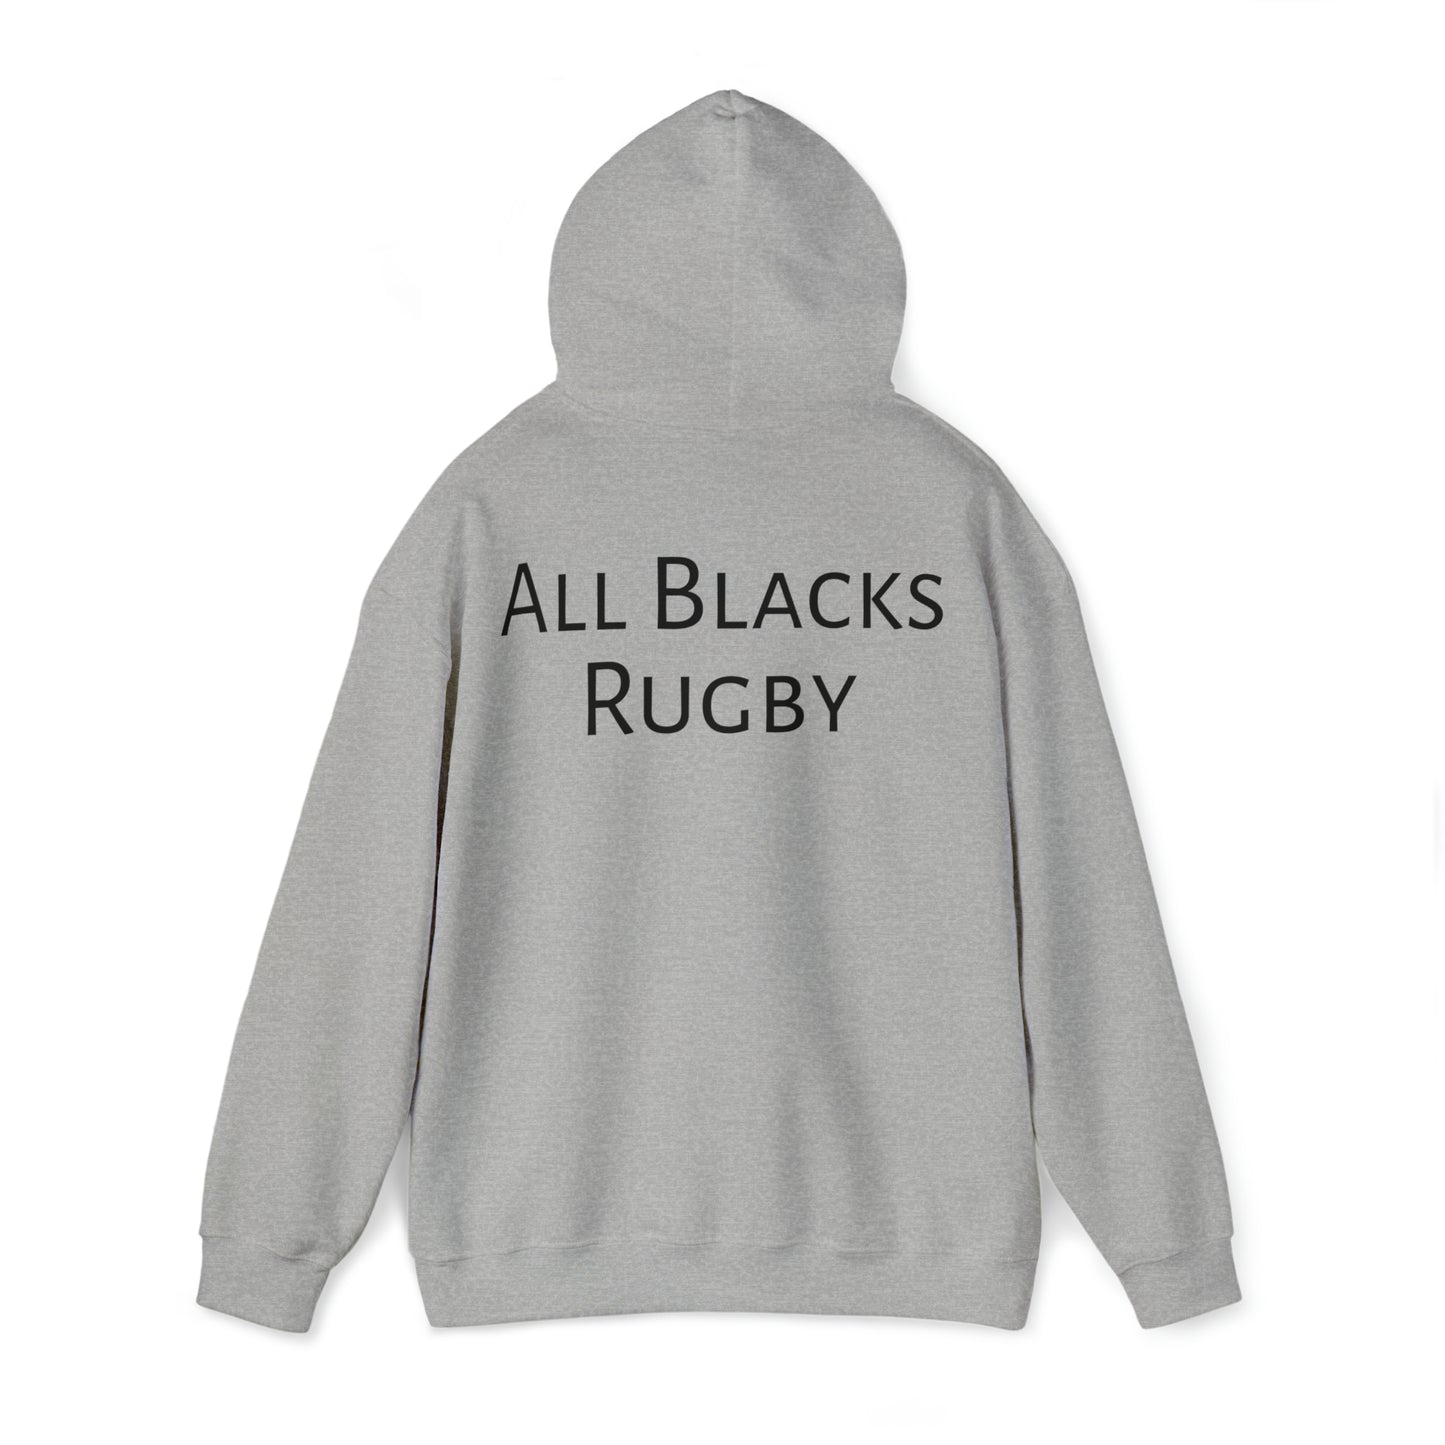 Rugby Gandalf - light hoodies